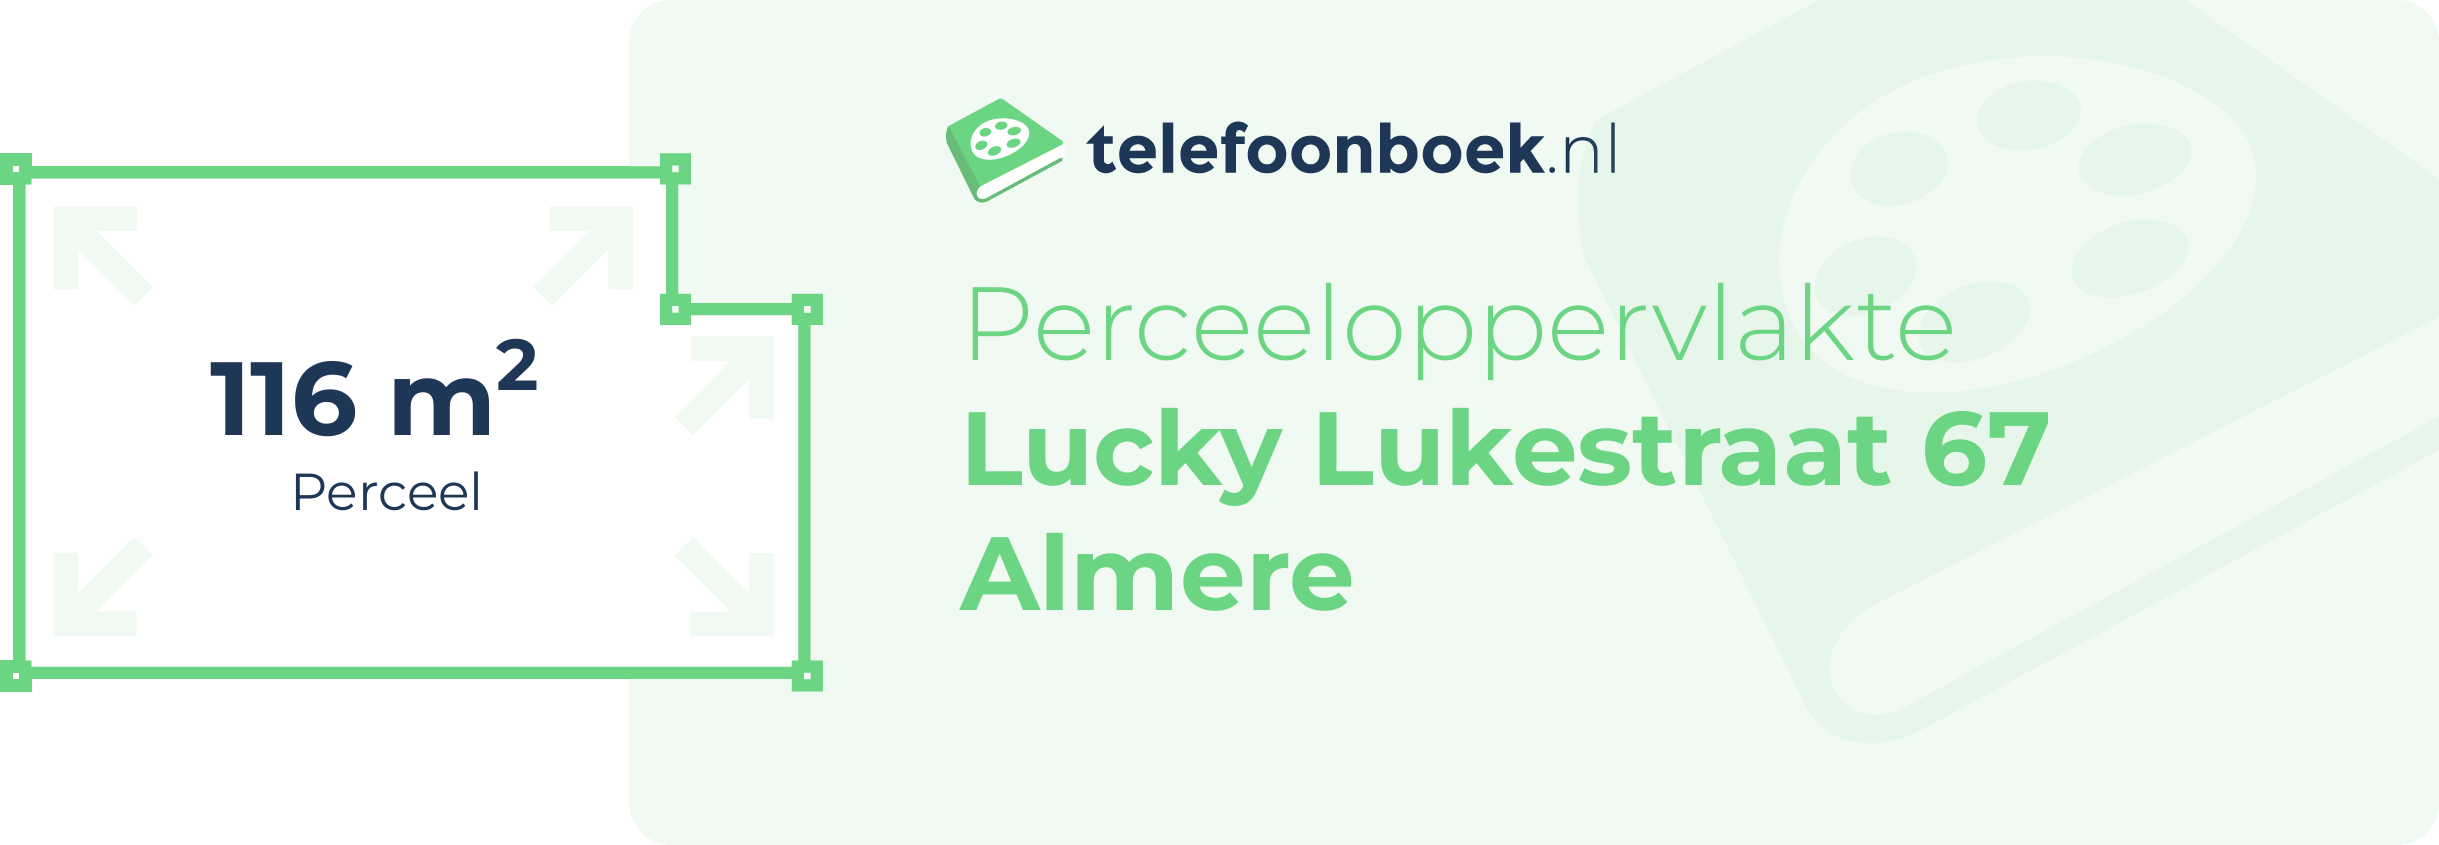 Perceeloppervlakte Lucky Lukestraat 67 Almere